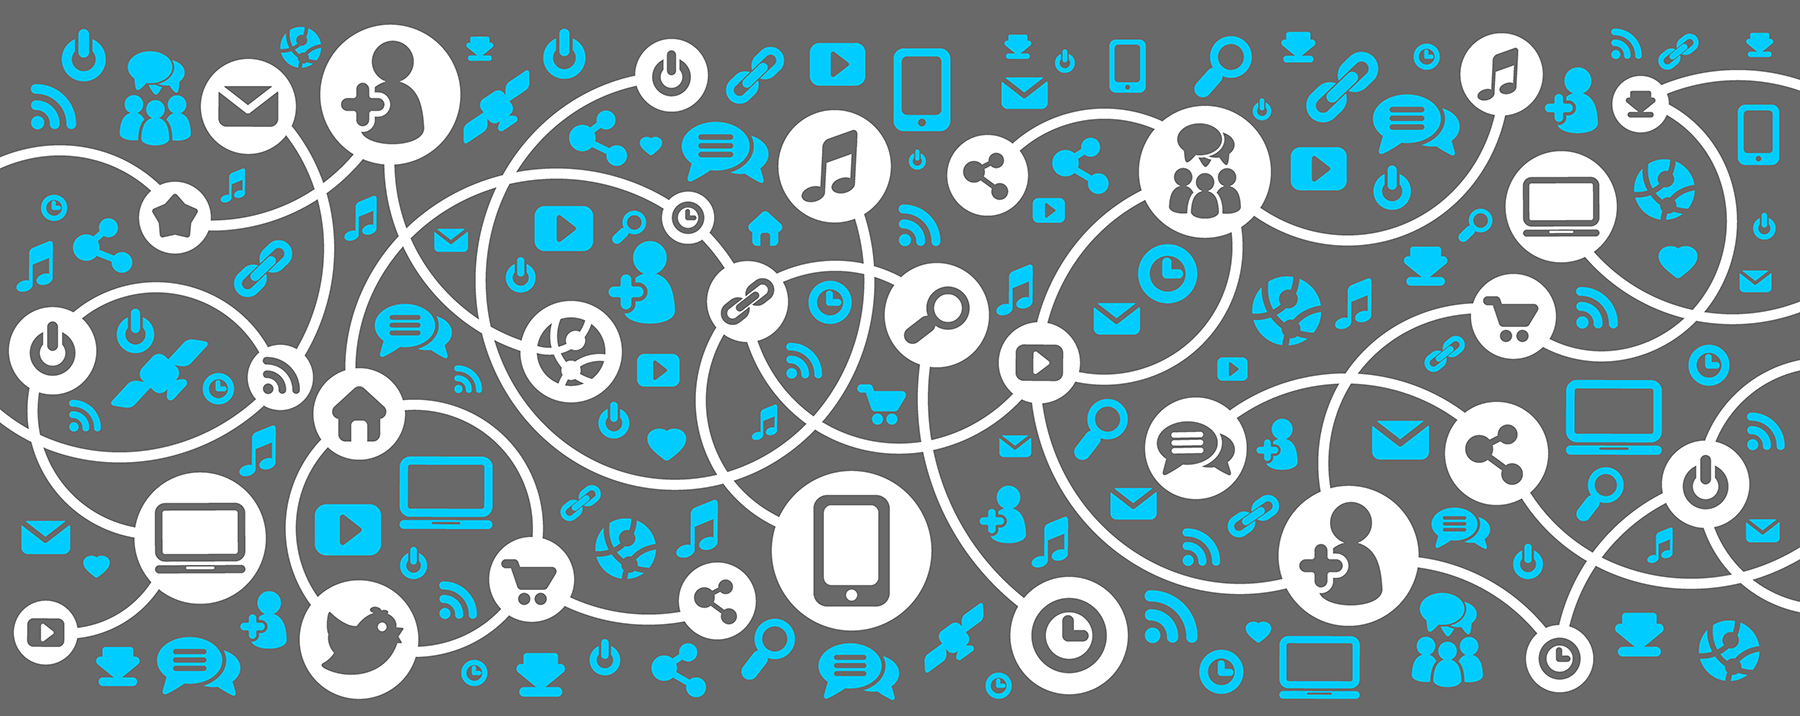 Social media network diagram illustration